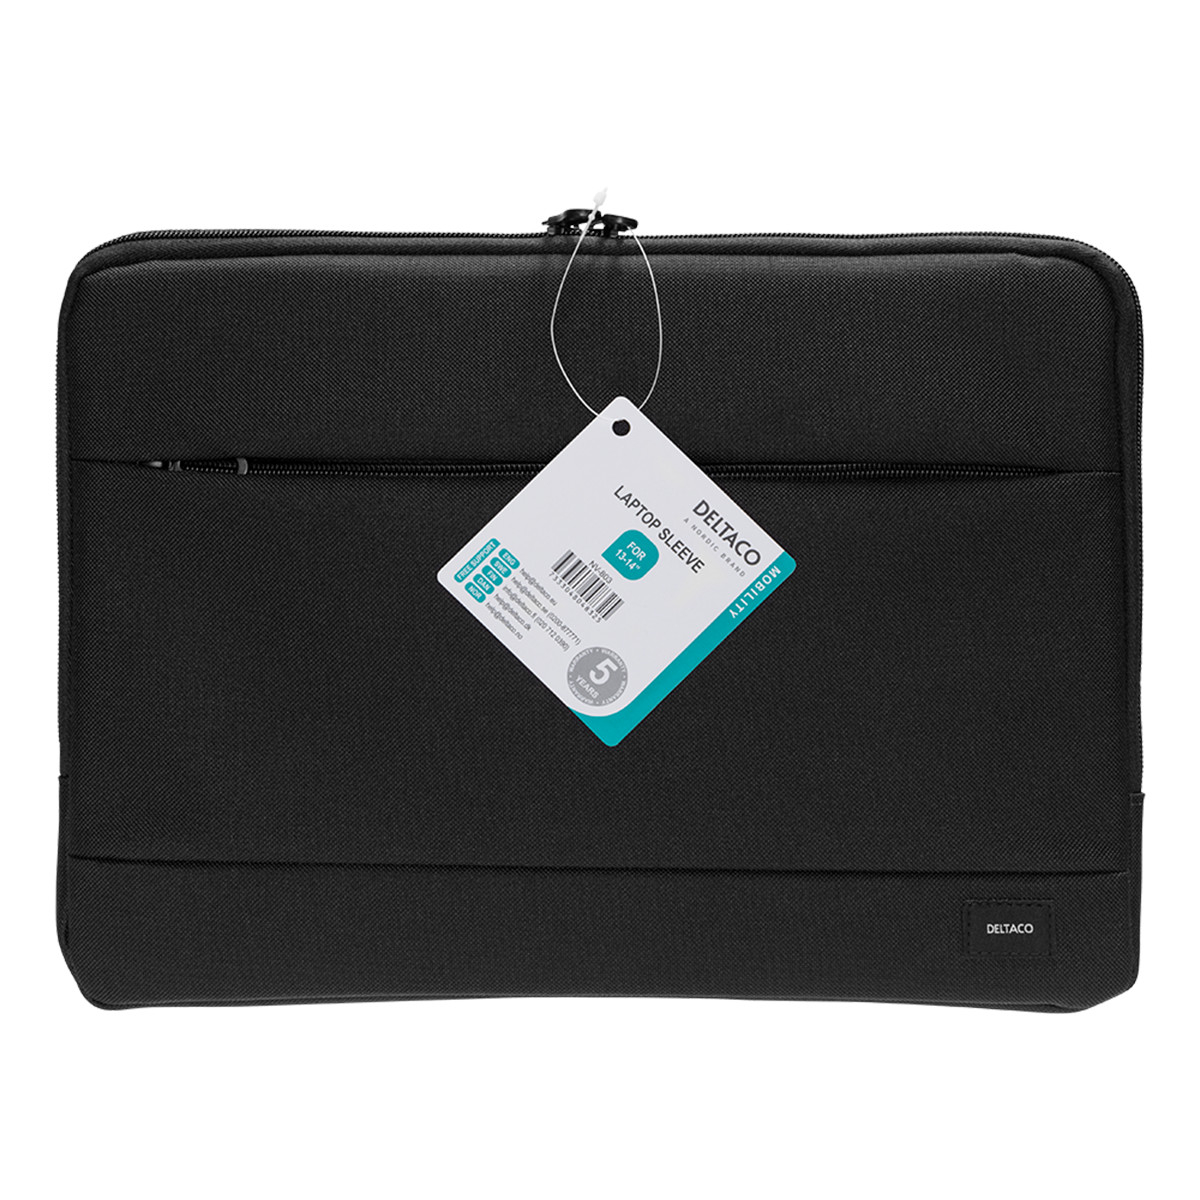 Deltaco Laptopfodral för laptops upp till 14 tum, svart